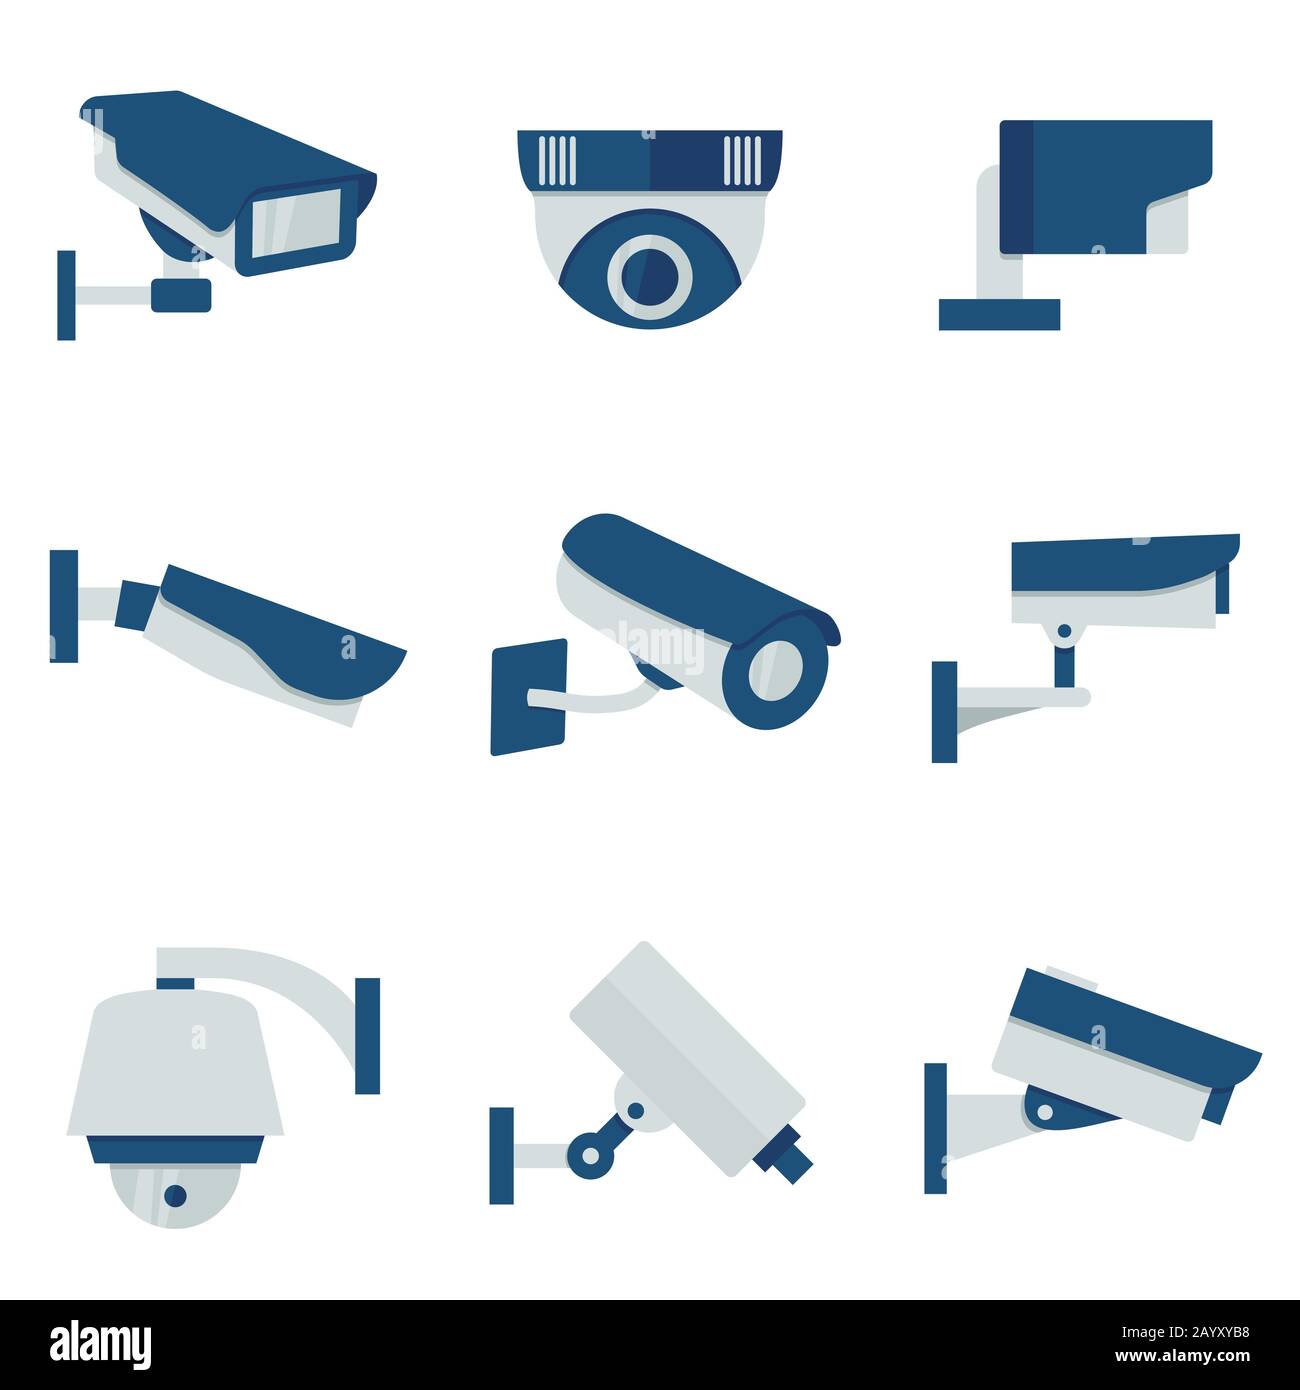 Ensemble d'icônes plates vectorielles de caméra vidéo de sécurité CCTV. système de sécurité cctv et surveillance avec cctv pour illustration de protection Illustration de Vecteur